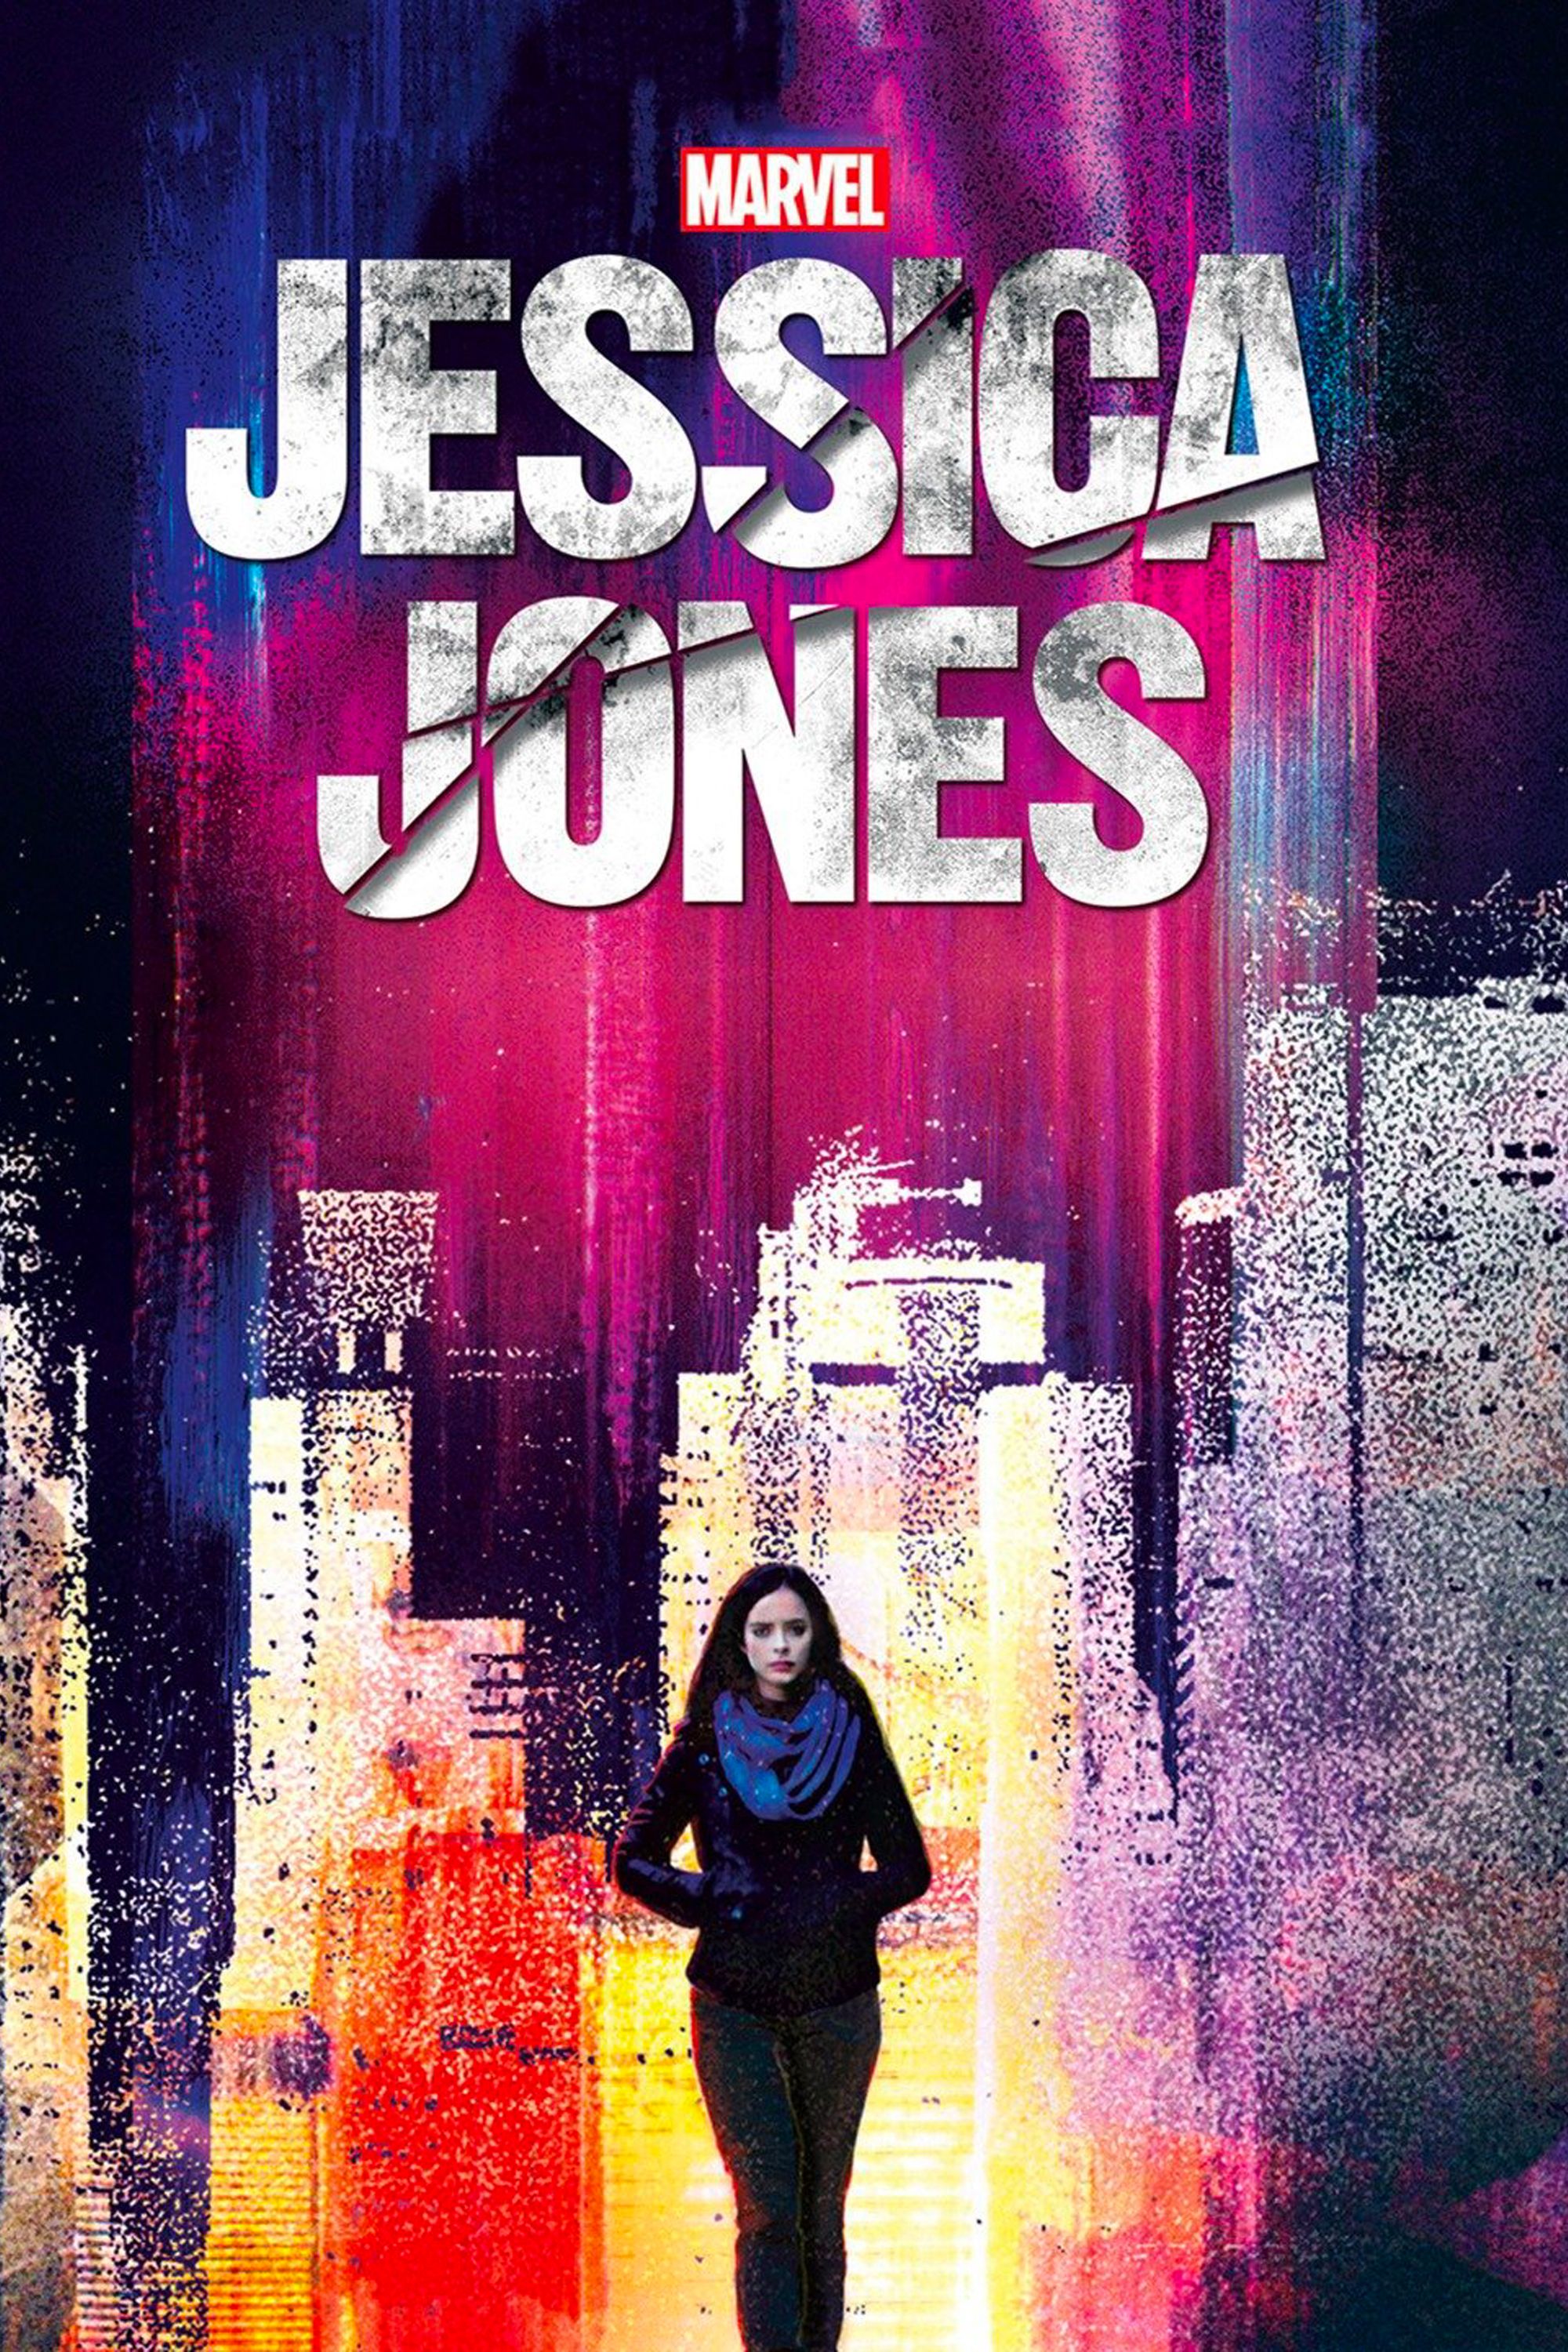 Jessica Jones Poster